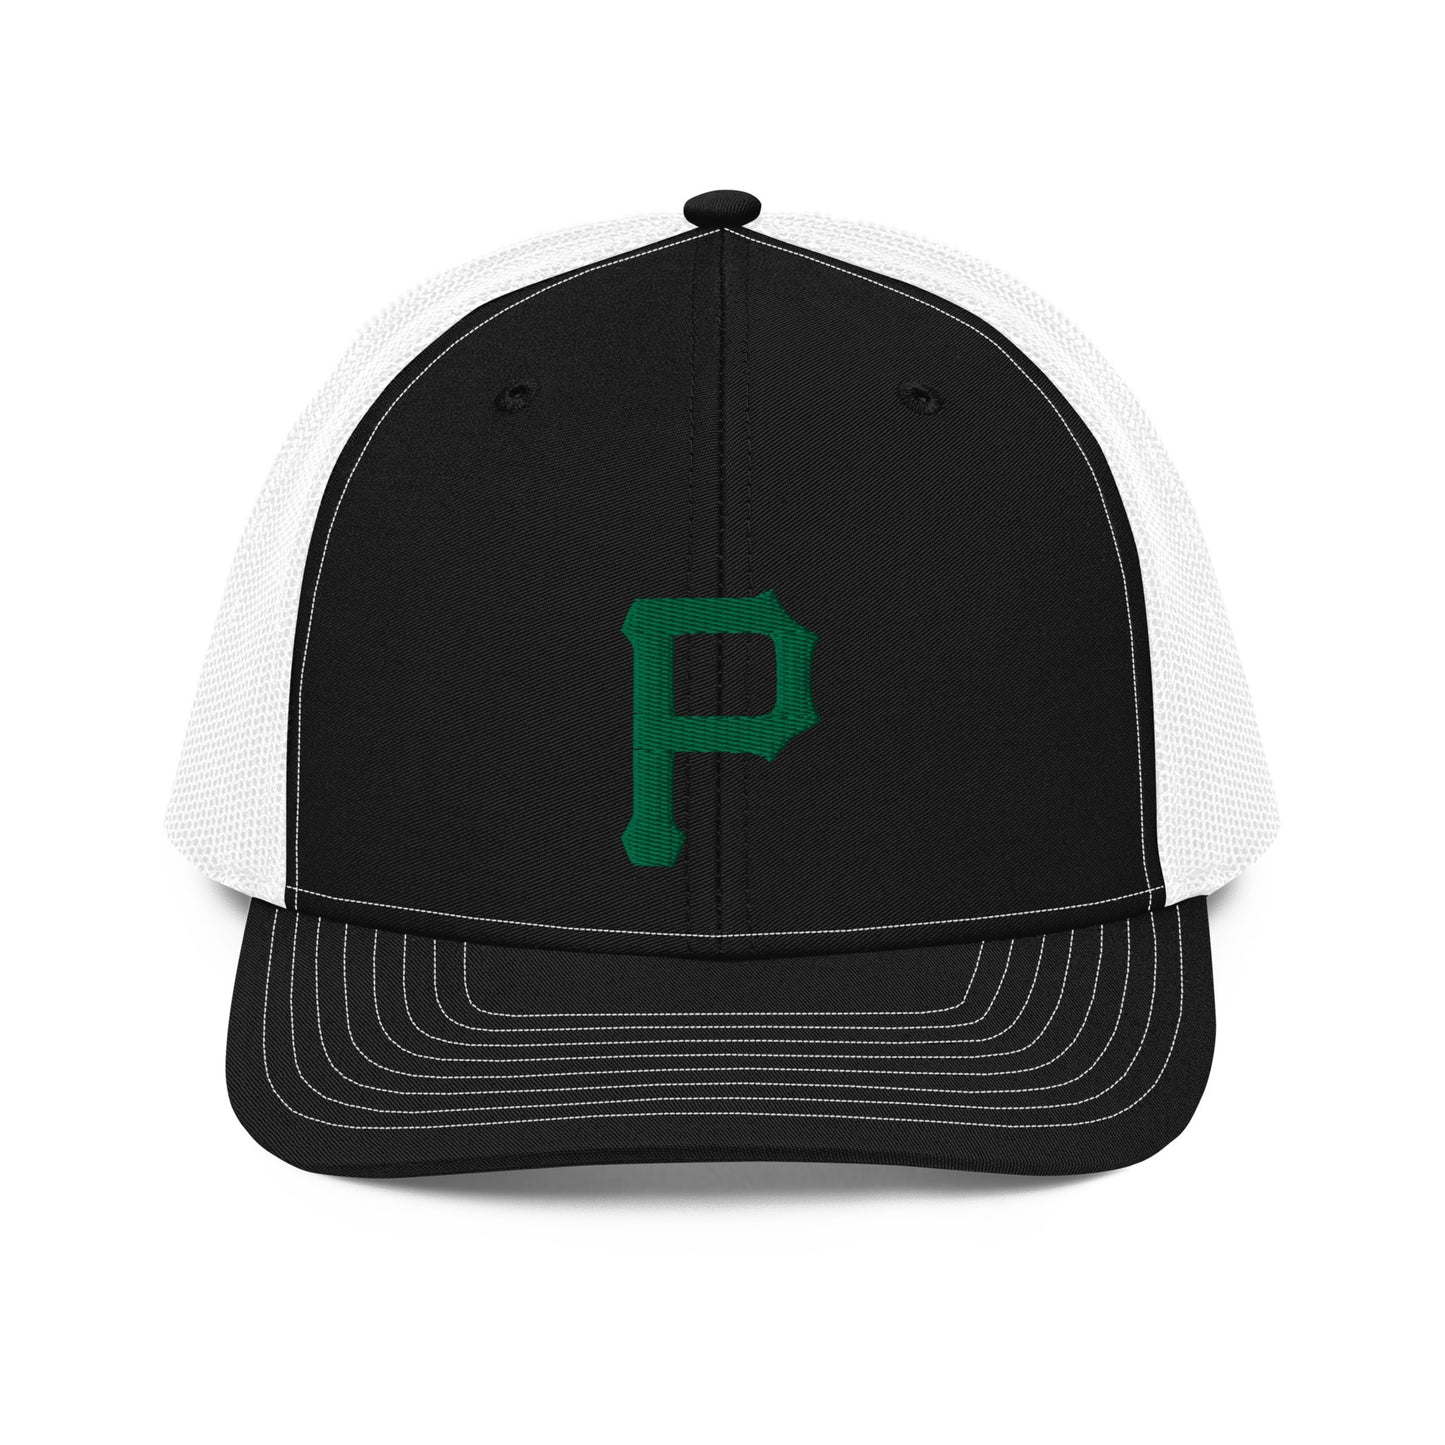 Plainfield P Trucker Hat